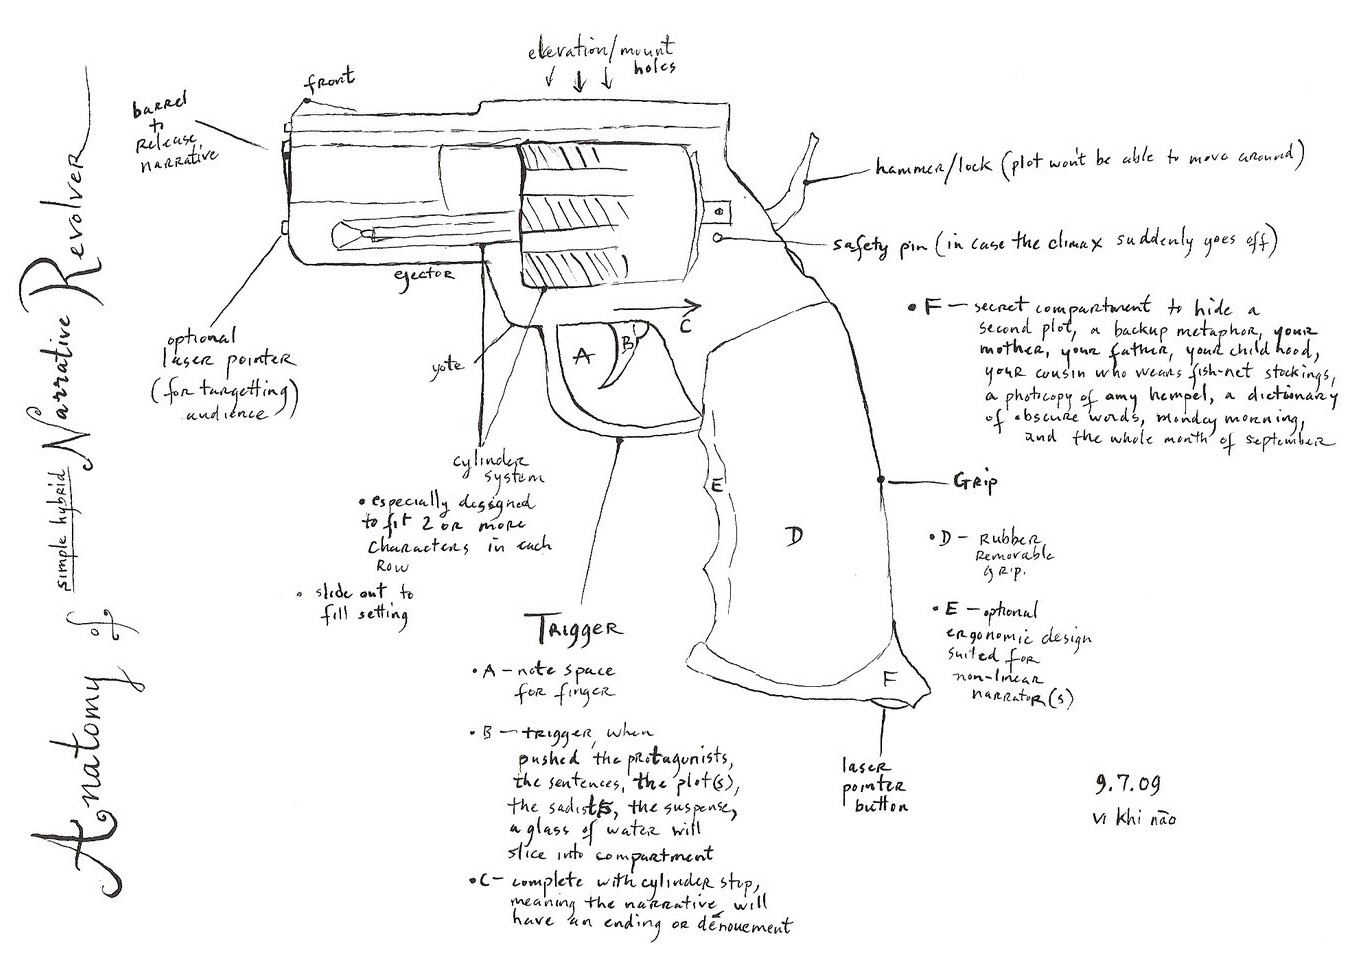 Anatomy of Simple Hybrid Narrative Revolver, by Vi Khi Nao